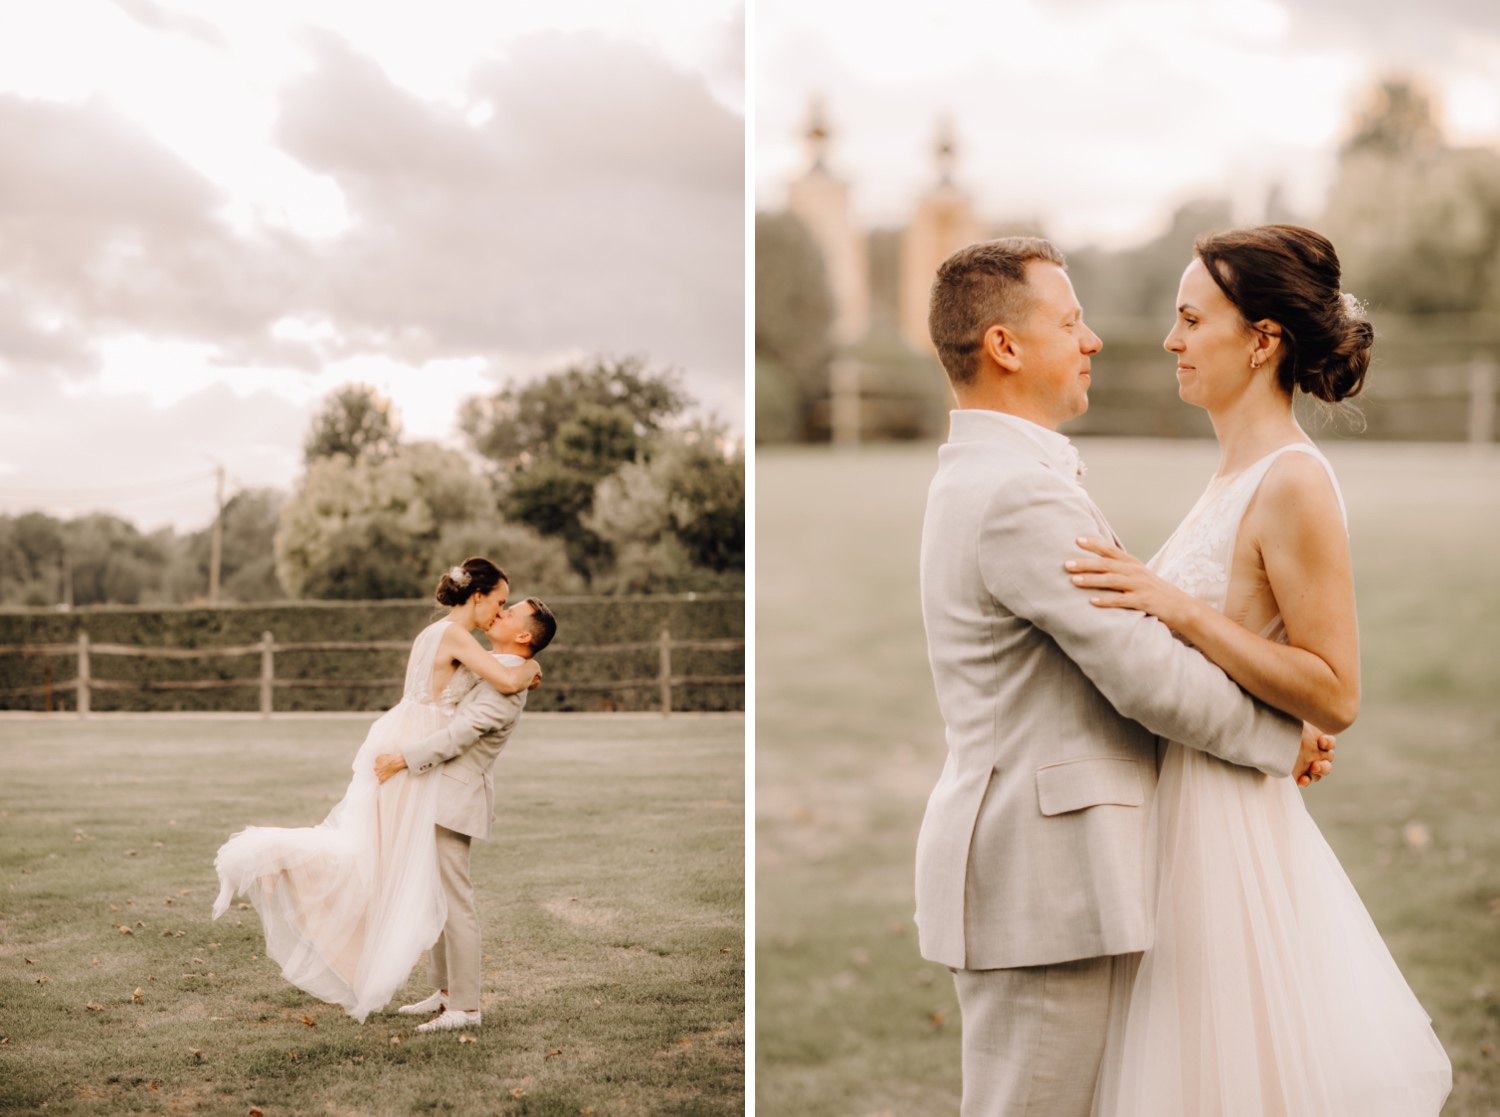 Huwelijksfotograaf Limburg - bruidspaar geeft elkaar een kus